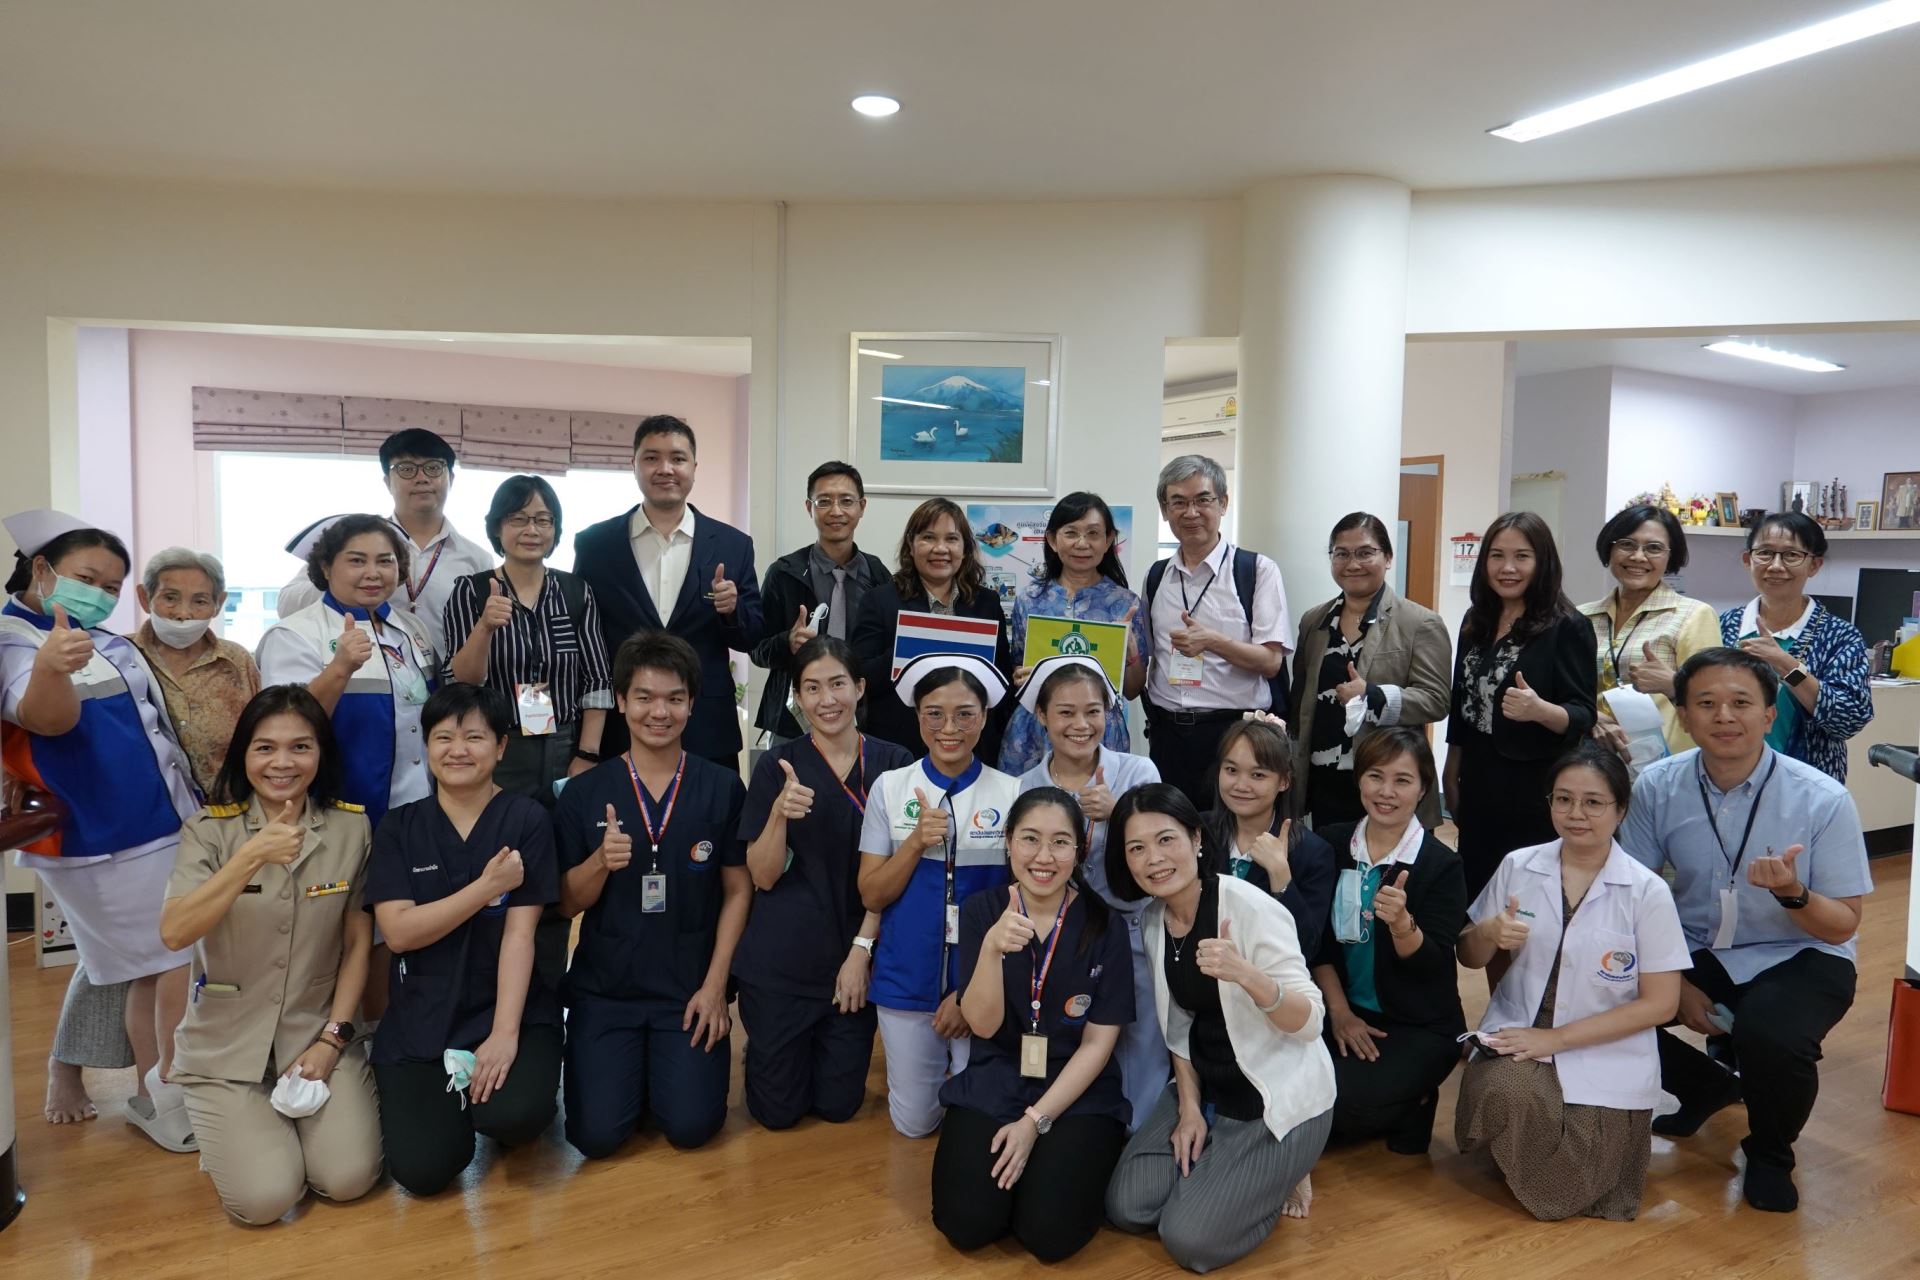 參訪泰國公共衛生部老人醫學研究所暨日照中心合影